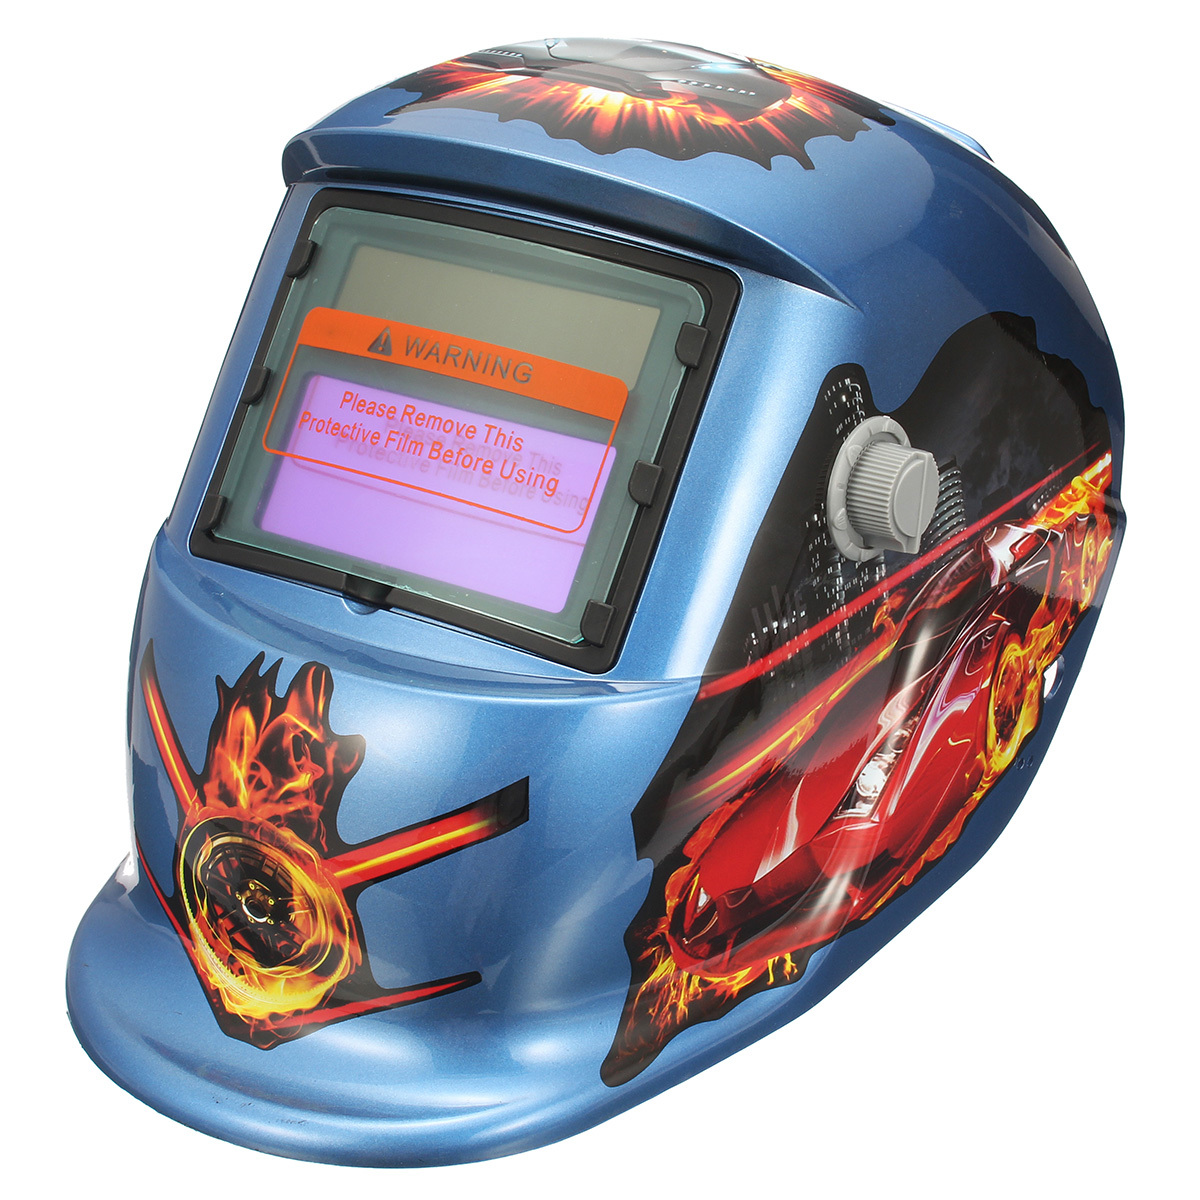 Fire Pro Solar Auto Welding Darkening Helmet Arc Tig mig Grinding Welders Mask 2